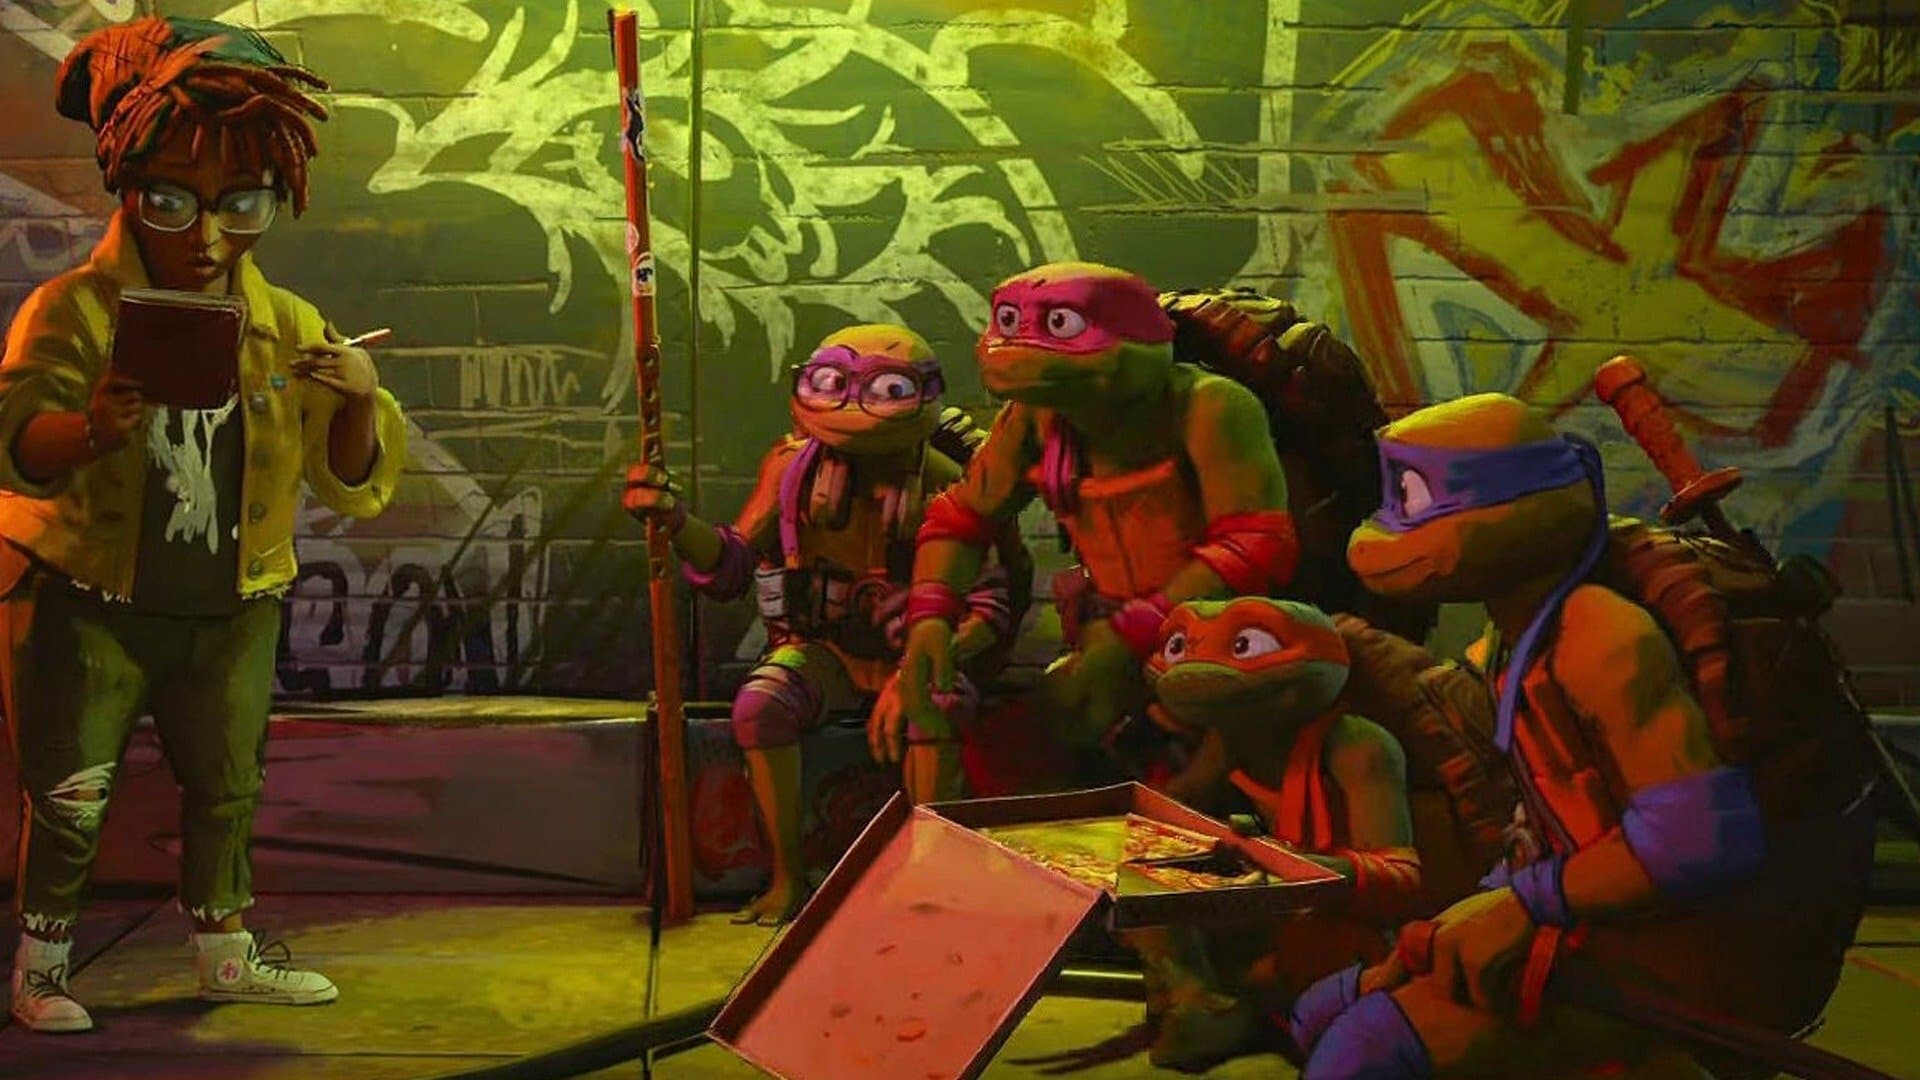 Teenage Mutant Ninja Turtles: Mutant Mayhem - Official Teaser Trailer  (2023) 